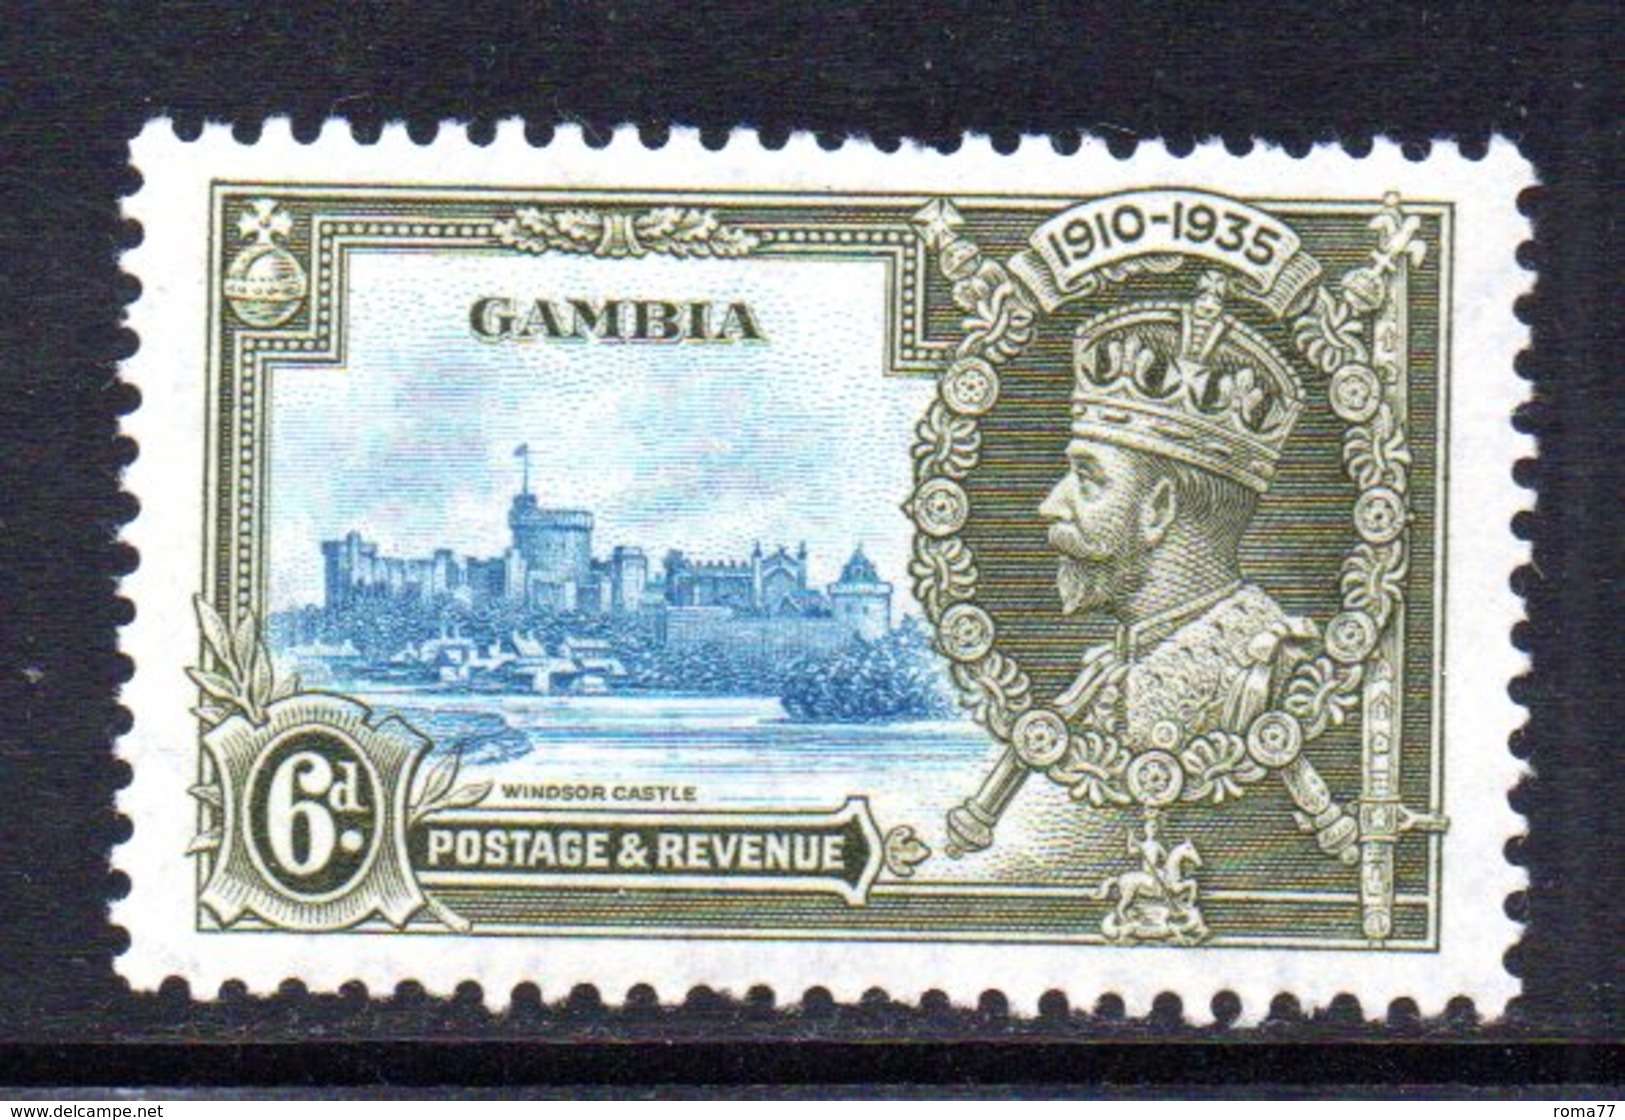 T308 - GAMBIA 1935 , Giubileo 6p. Yvert N. 117  * - Gambia (...-1964)